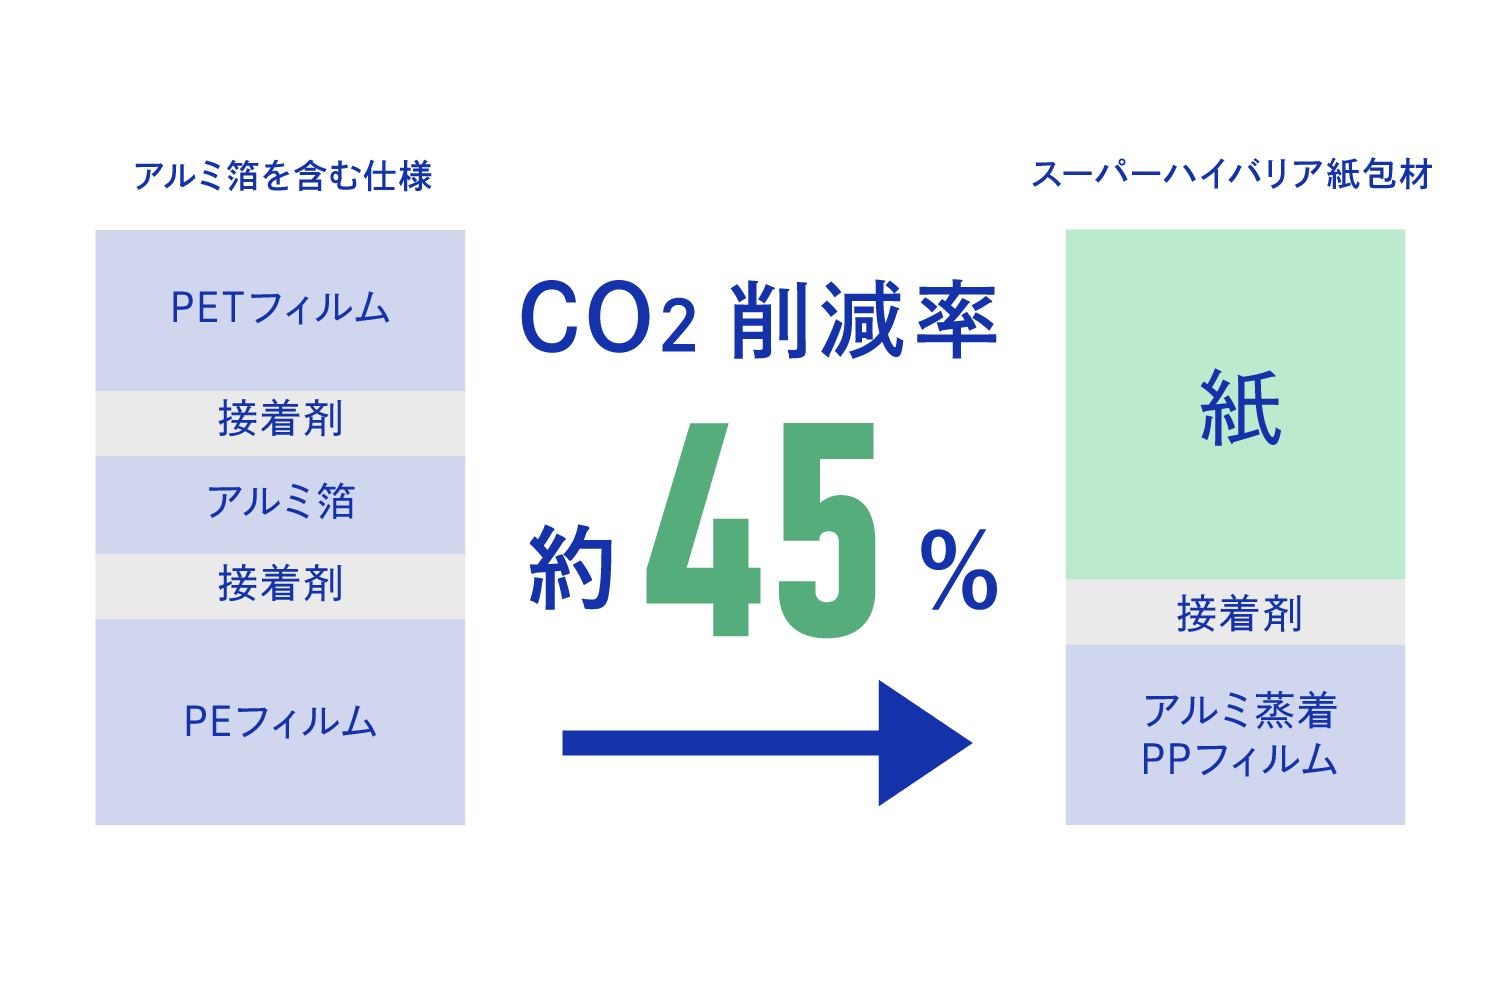 紙とシーラントからなる2層構成でプラスチック使用量とCO2排出量を削減を表す図